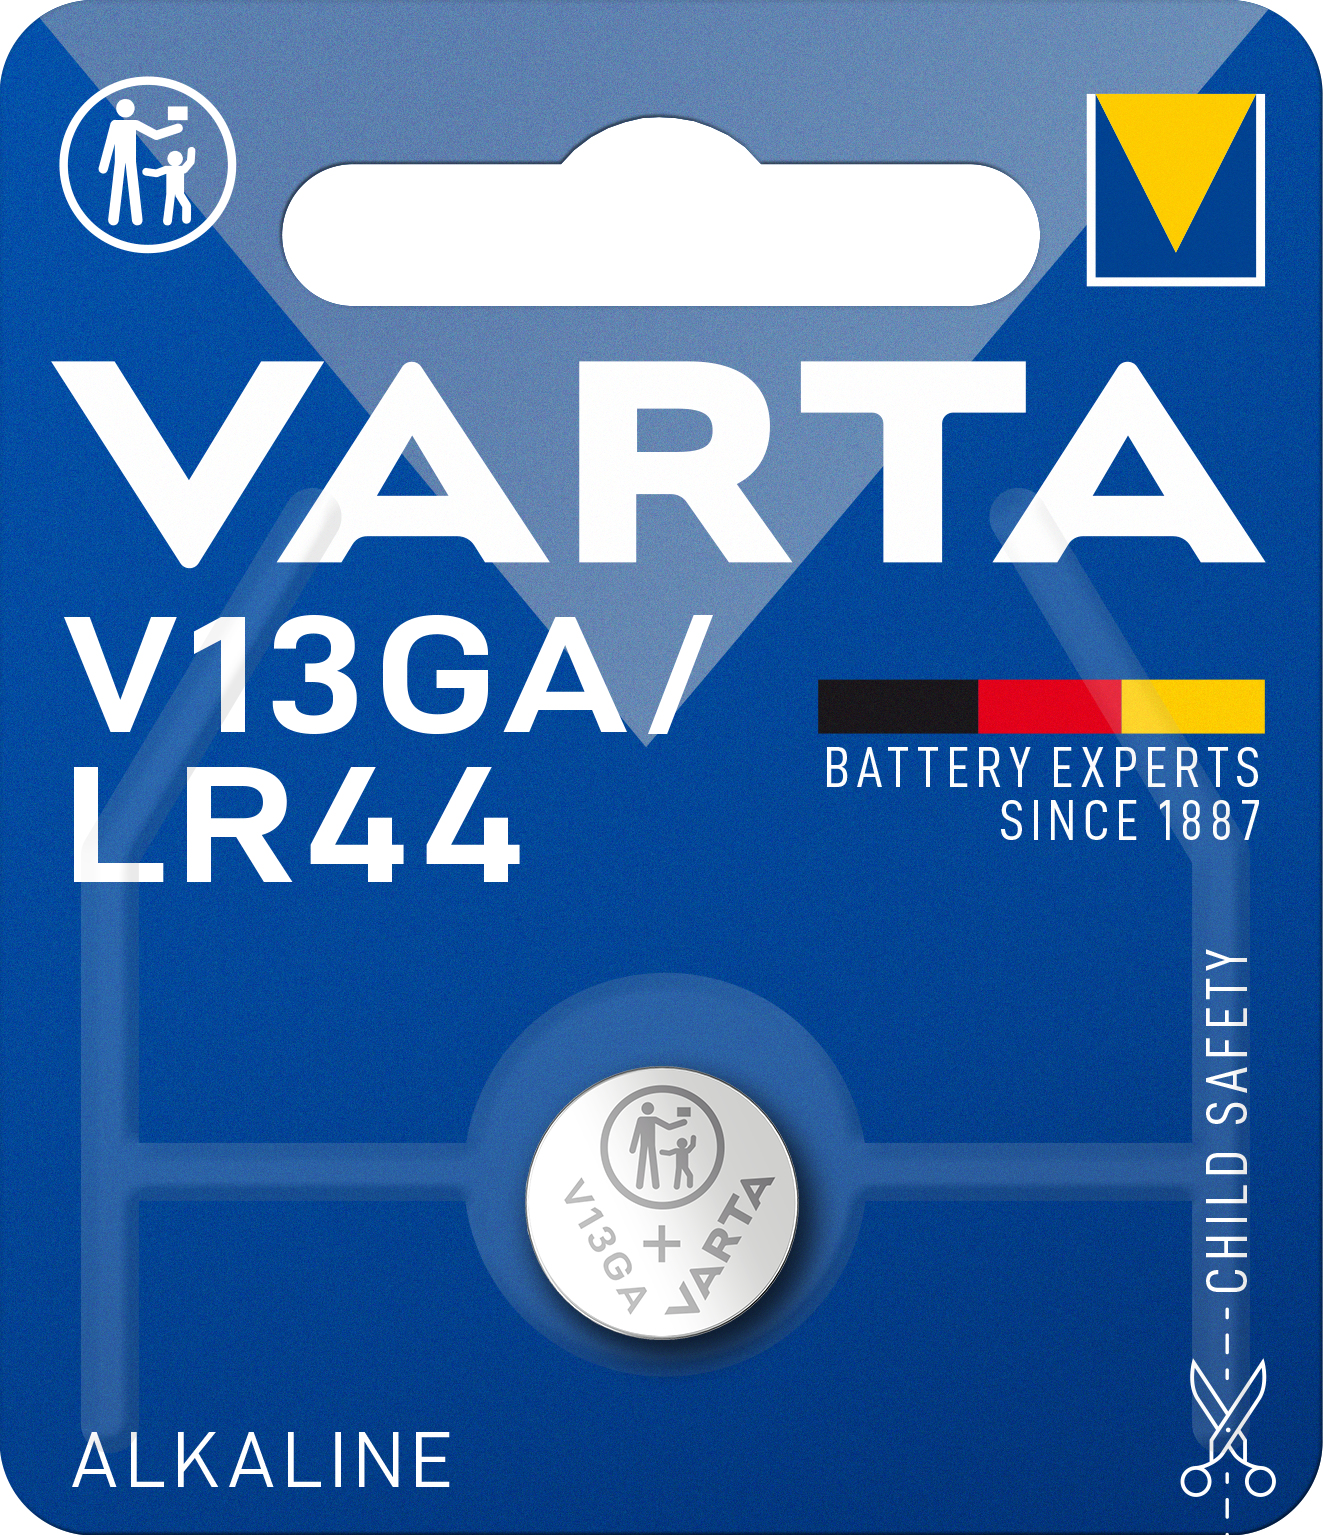 Varta V 13 GA - Batterie LR44 - Alkalisch - 125